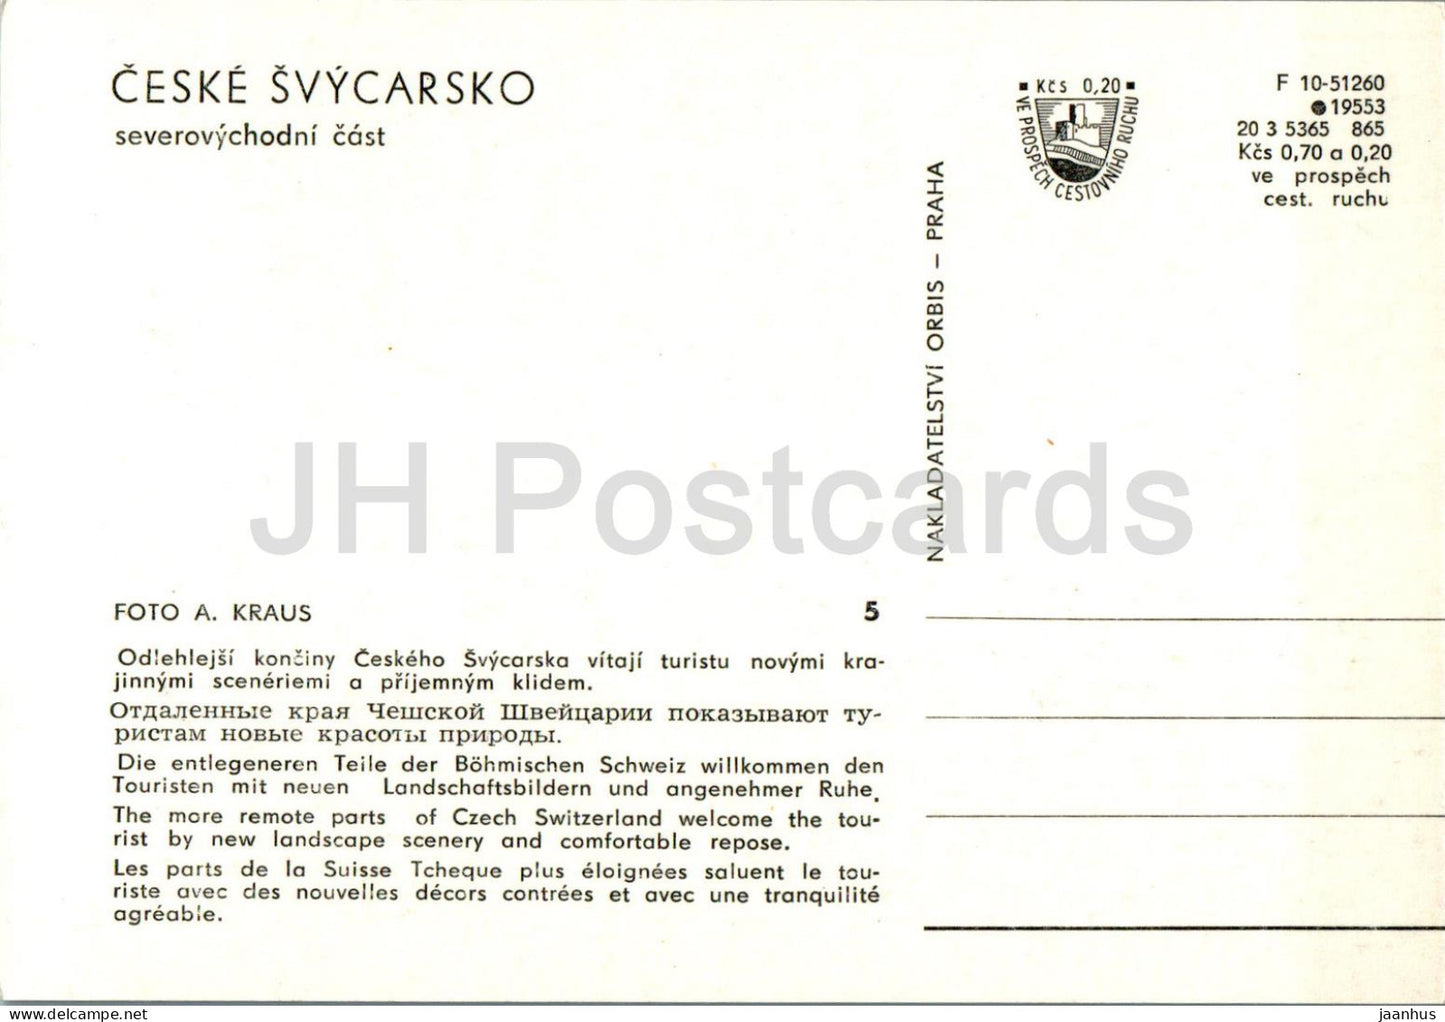 Ceske Svycarsko - Czech Switzerland - 5 - Czech Repubic - Czechoslovakia - unused